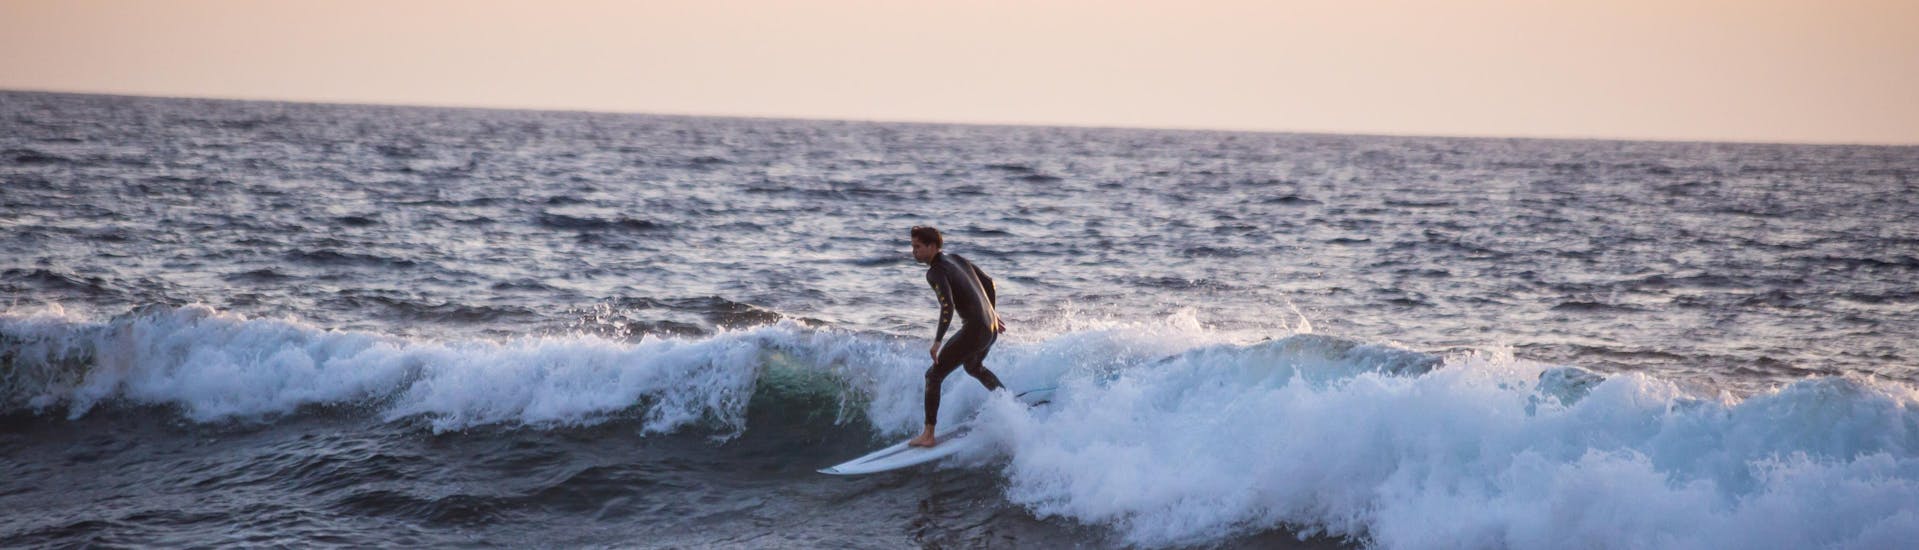 Ein Surfer reitet eine Welle in Playa de las Américas, einem großartigen Ort zum Surfen auf Teneriffa.